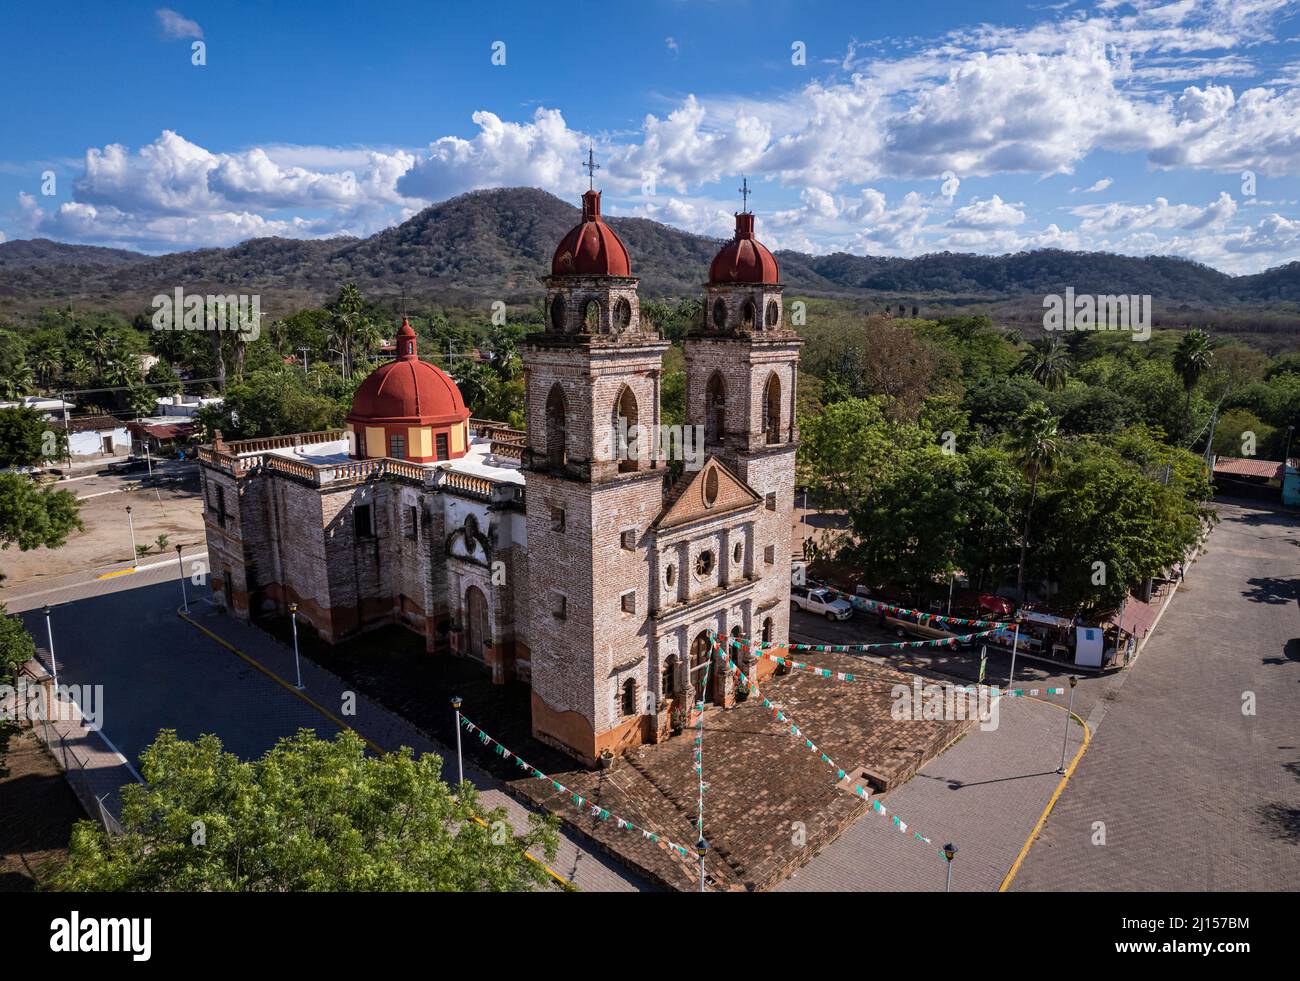 La chiesa del villaggio di Imala vicino alla città di Culiacan in Sinaloa, Messico. Foto Stock